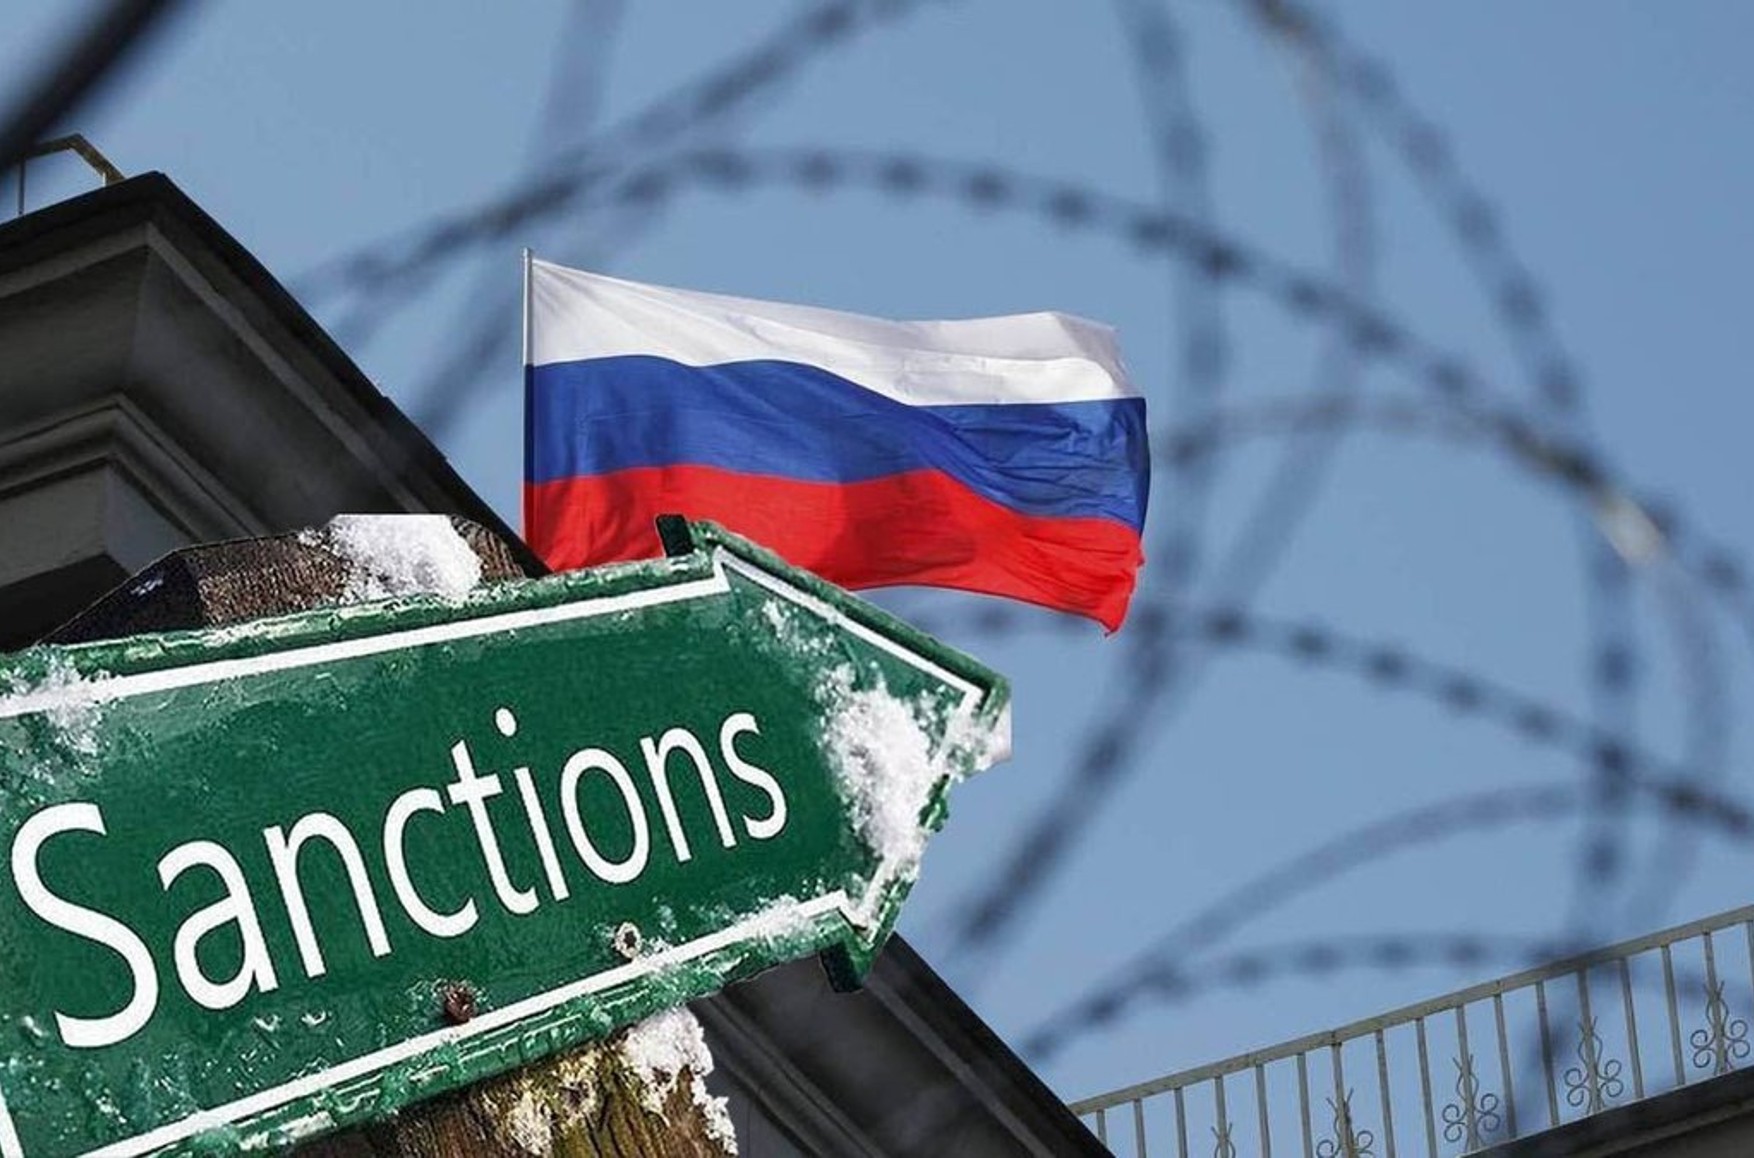 Rusiya 23 Britaniya vətəndaşına sanksiya tətbiq edib